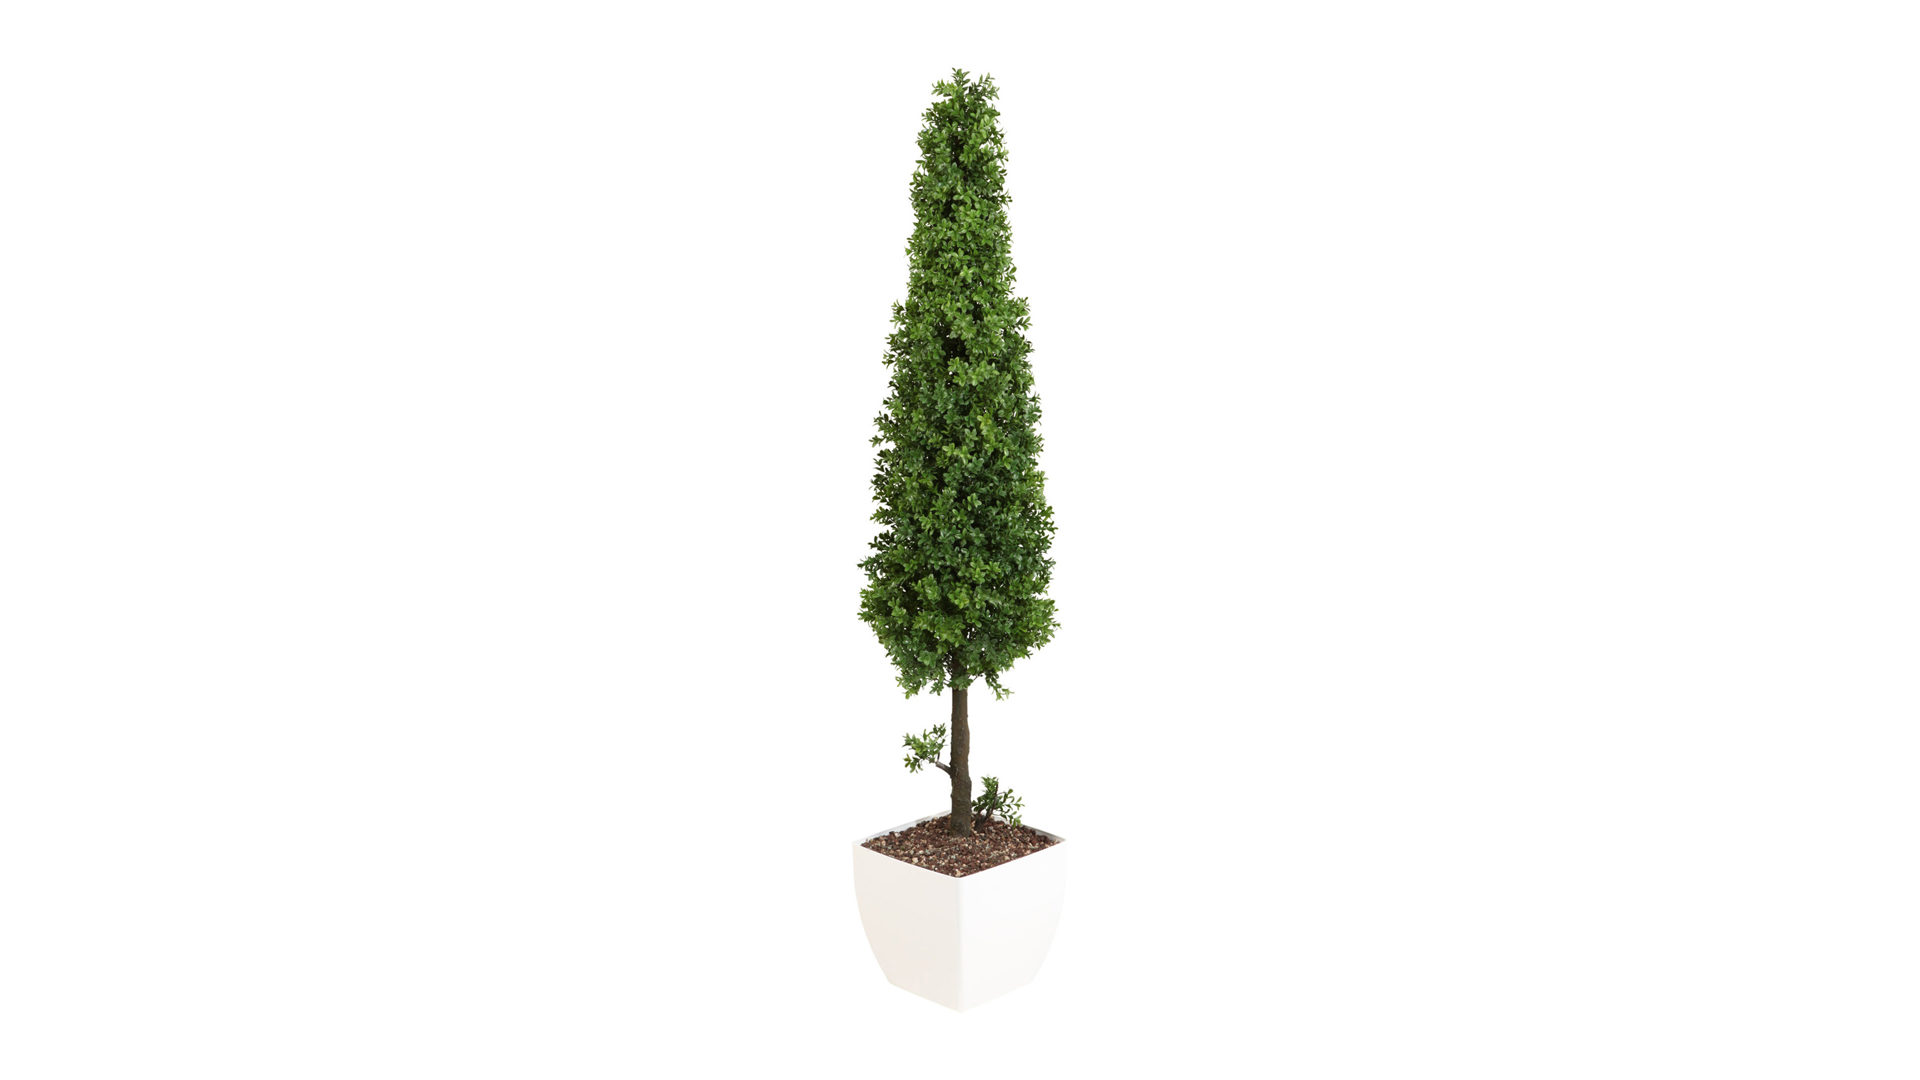 Pflanze Gasper aus Kunststoff in Grün Buchsbaumpyramide künstliche Buchsbaumblätter - ca. 90 cm hoch